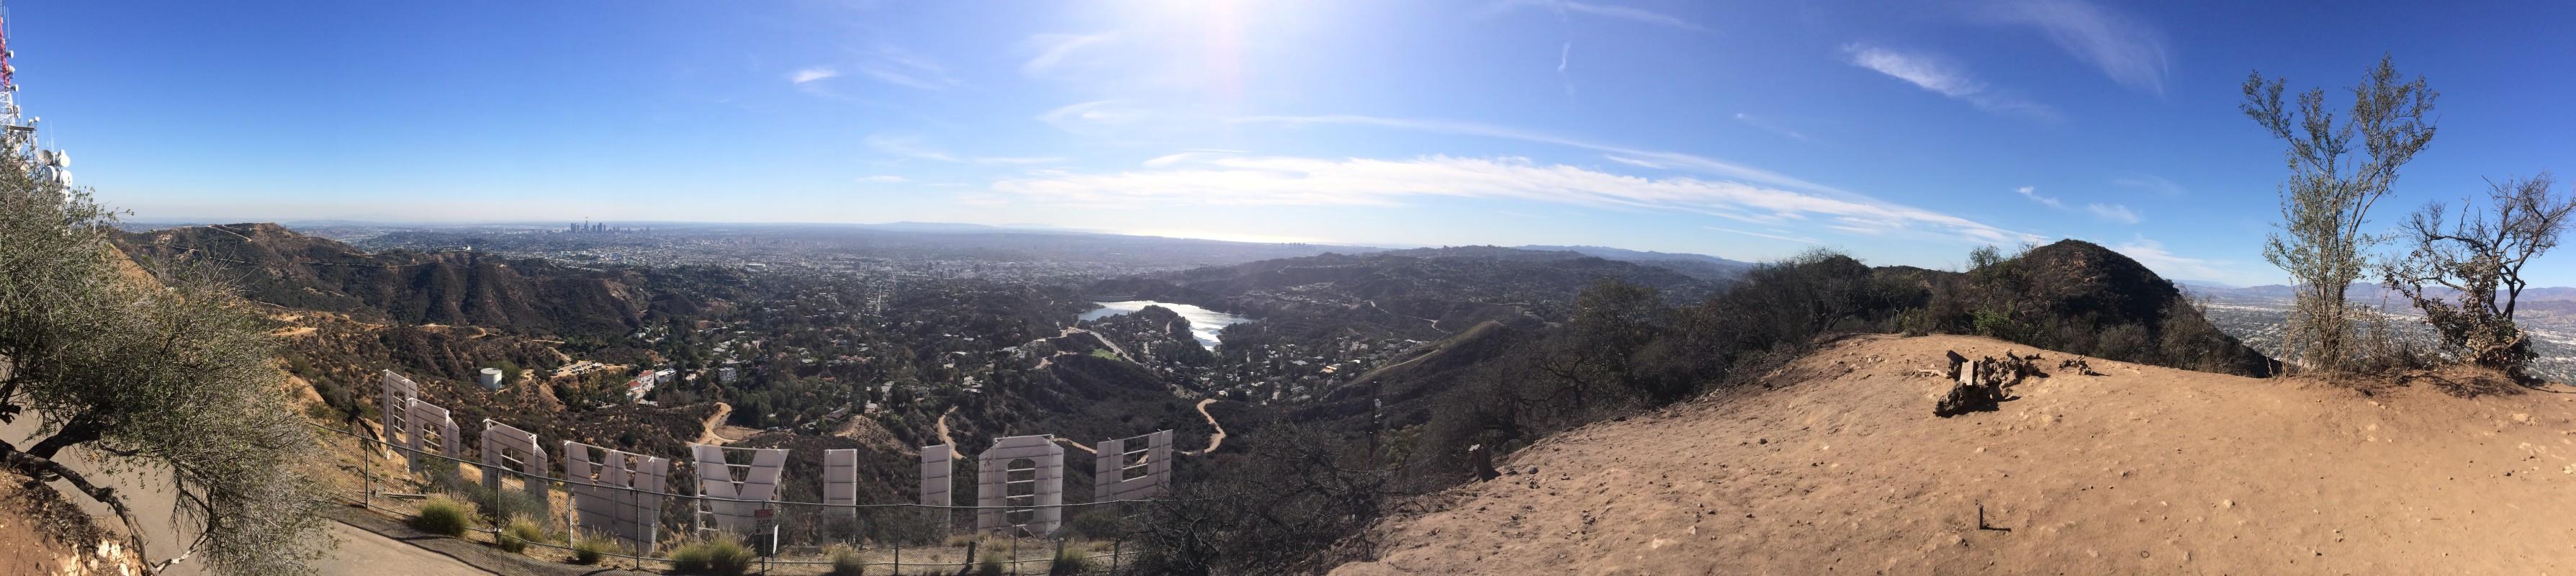 好莱坞山,加州洛杉矶